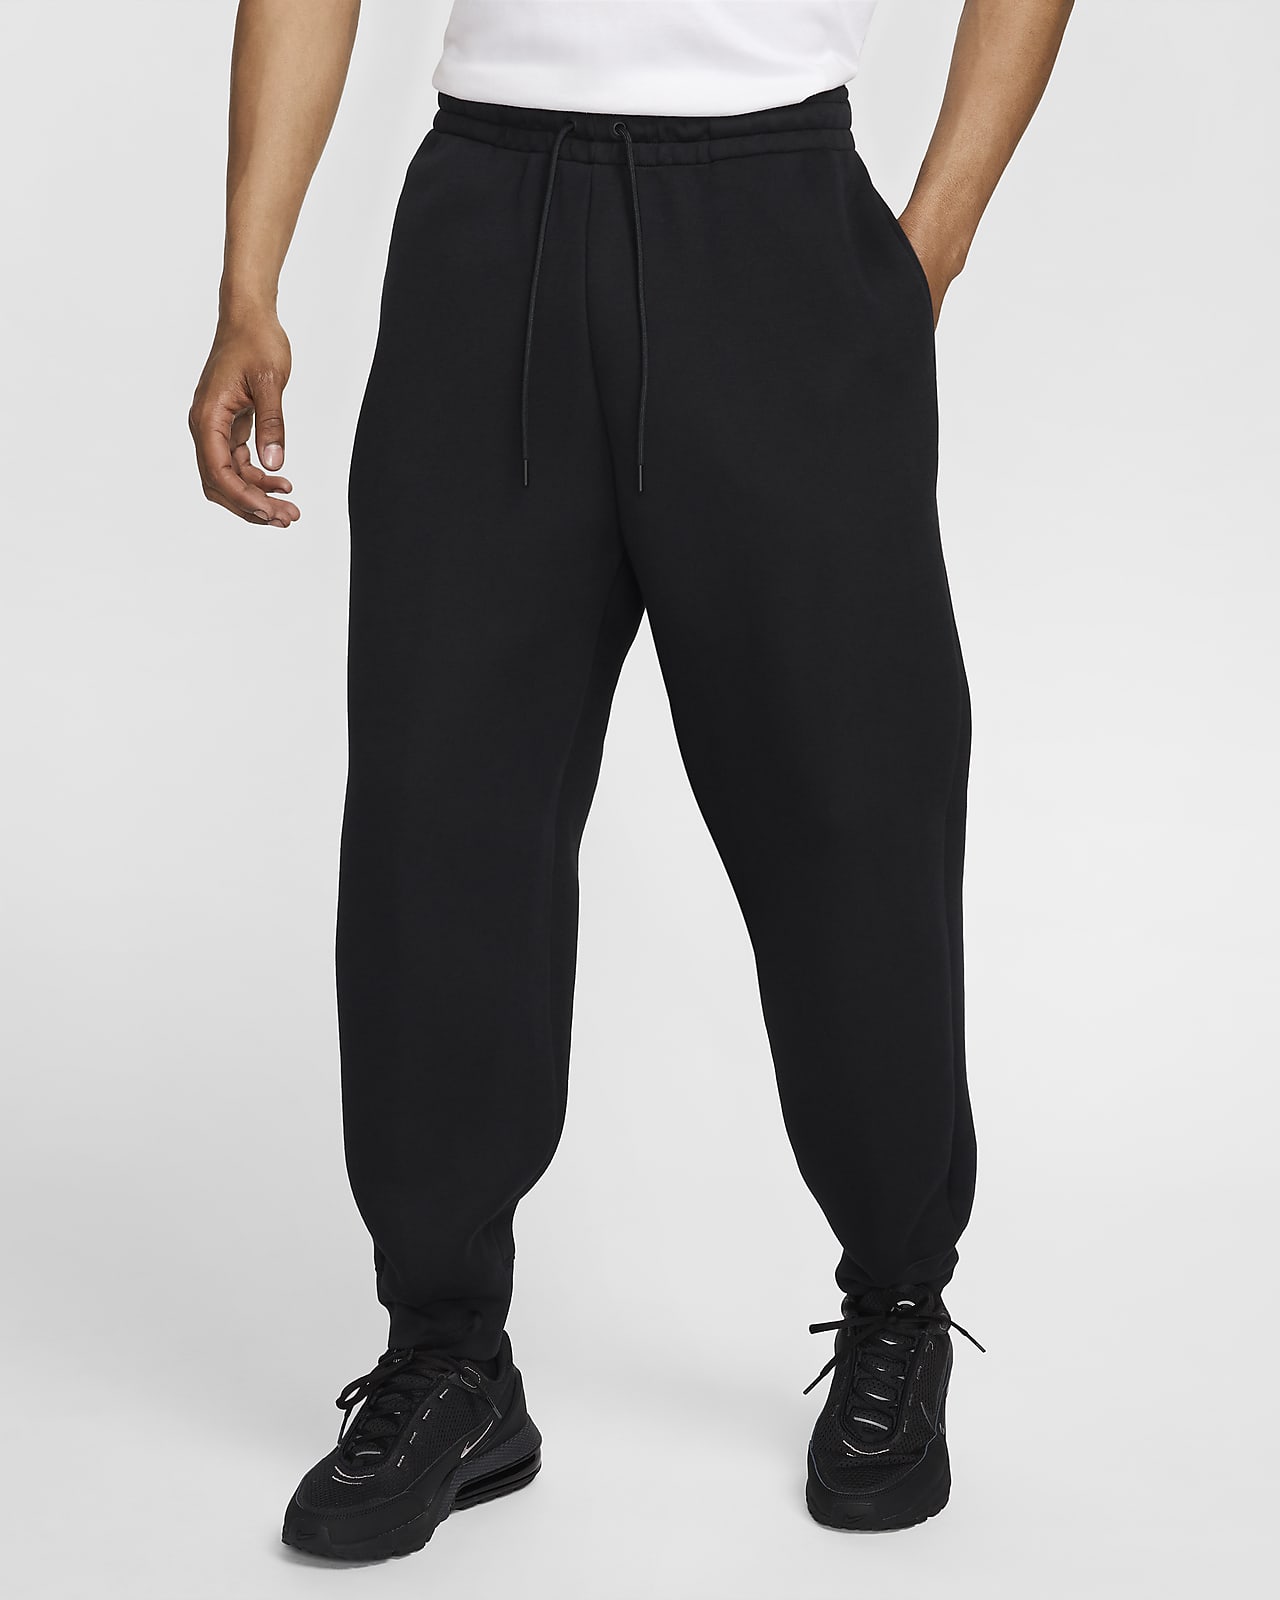 Nike Tech Pantalons de teixit Fleece - Home